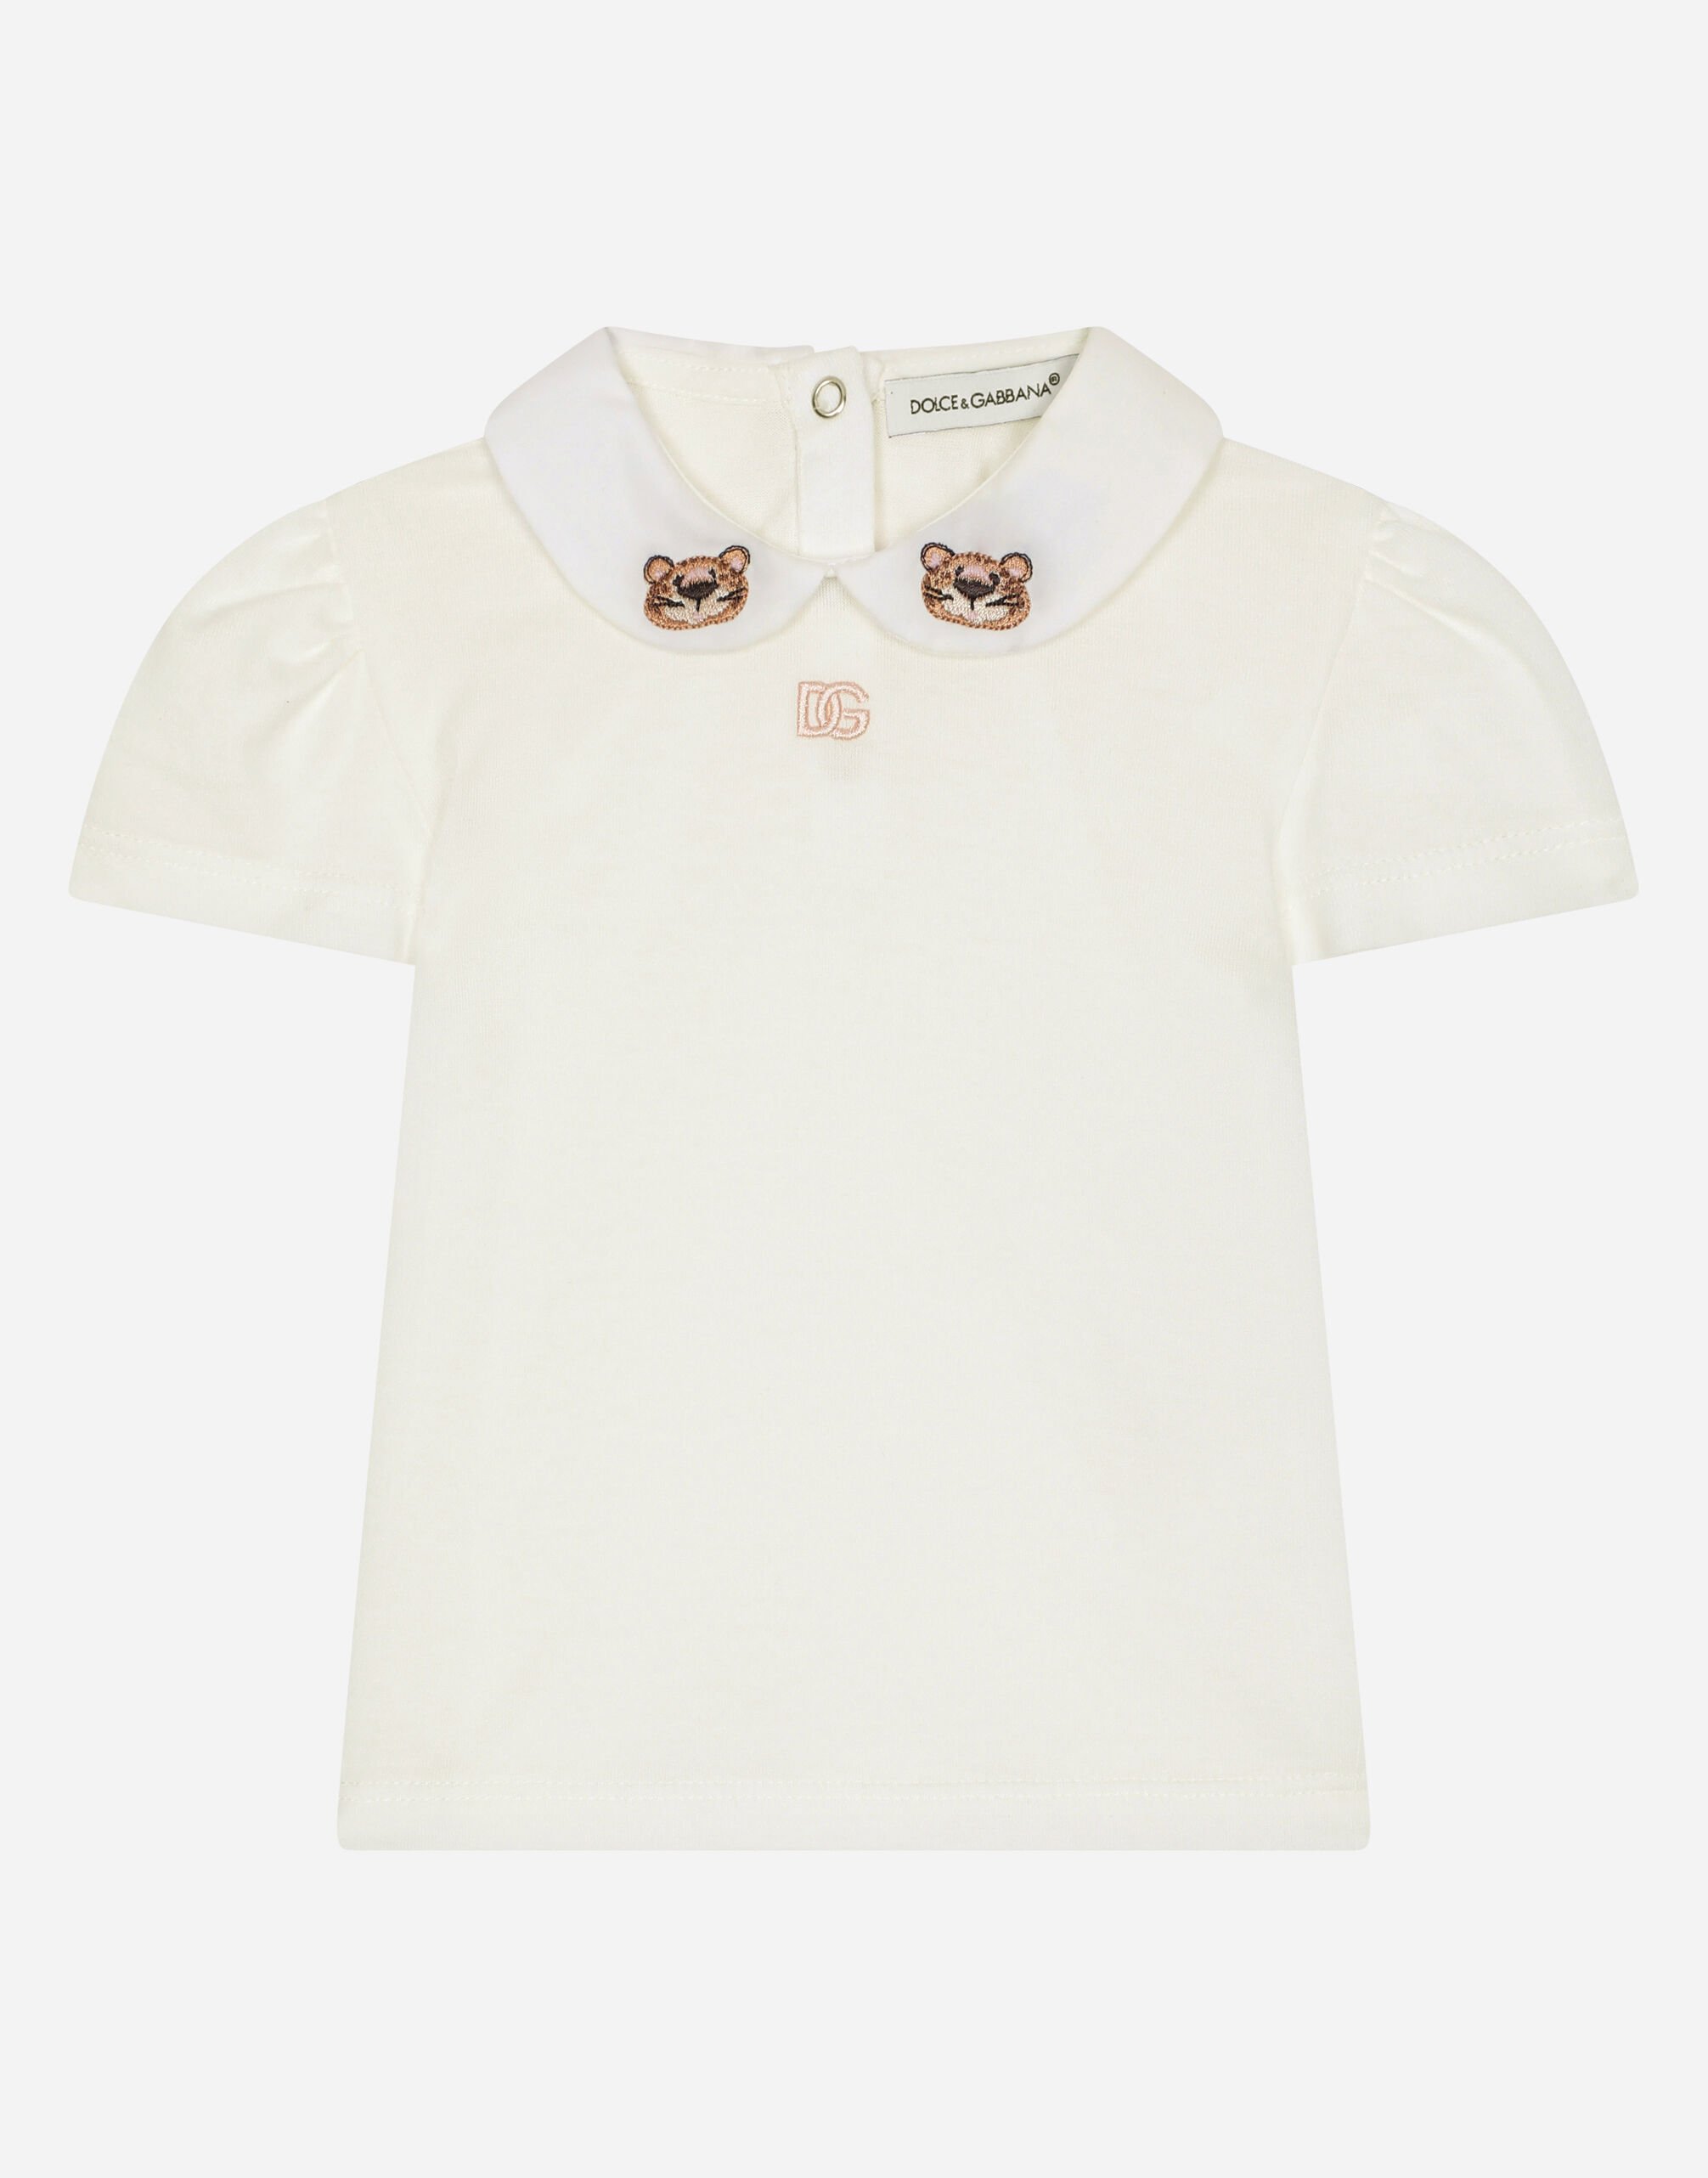 Dolce & Gabbana T-Shirt aus Jersey mit Stickerei Baby Leo ROSA DK0065A1293